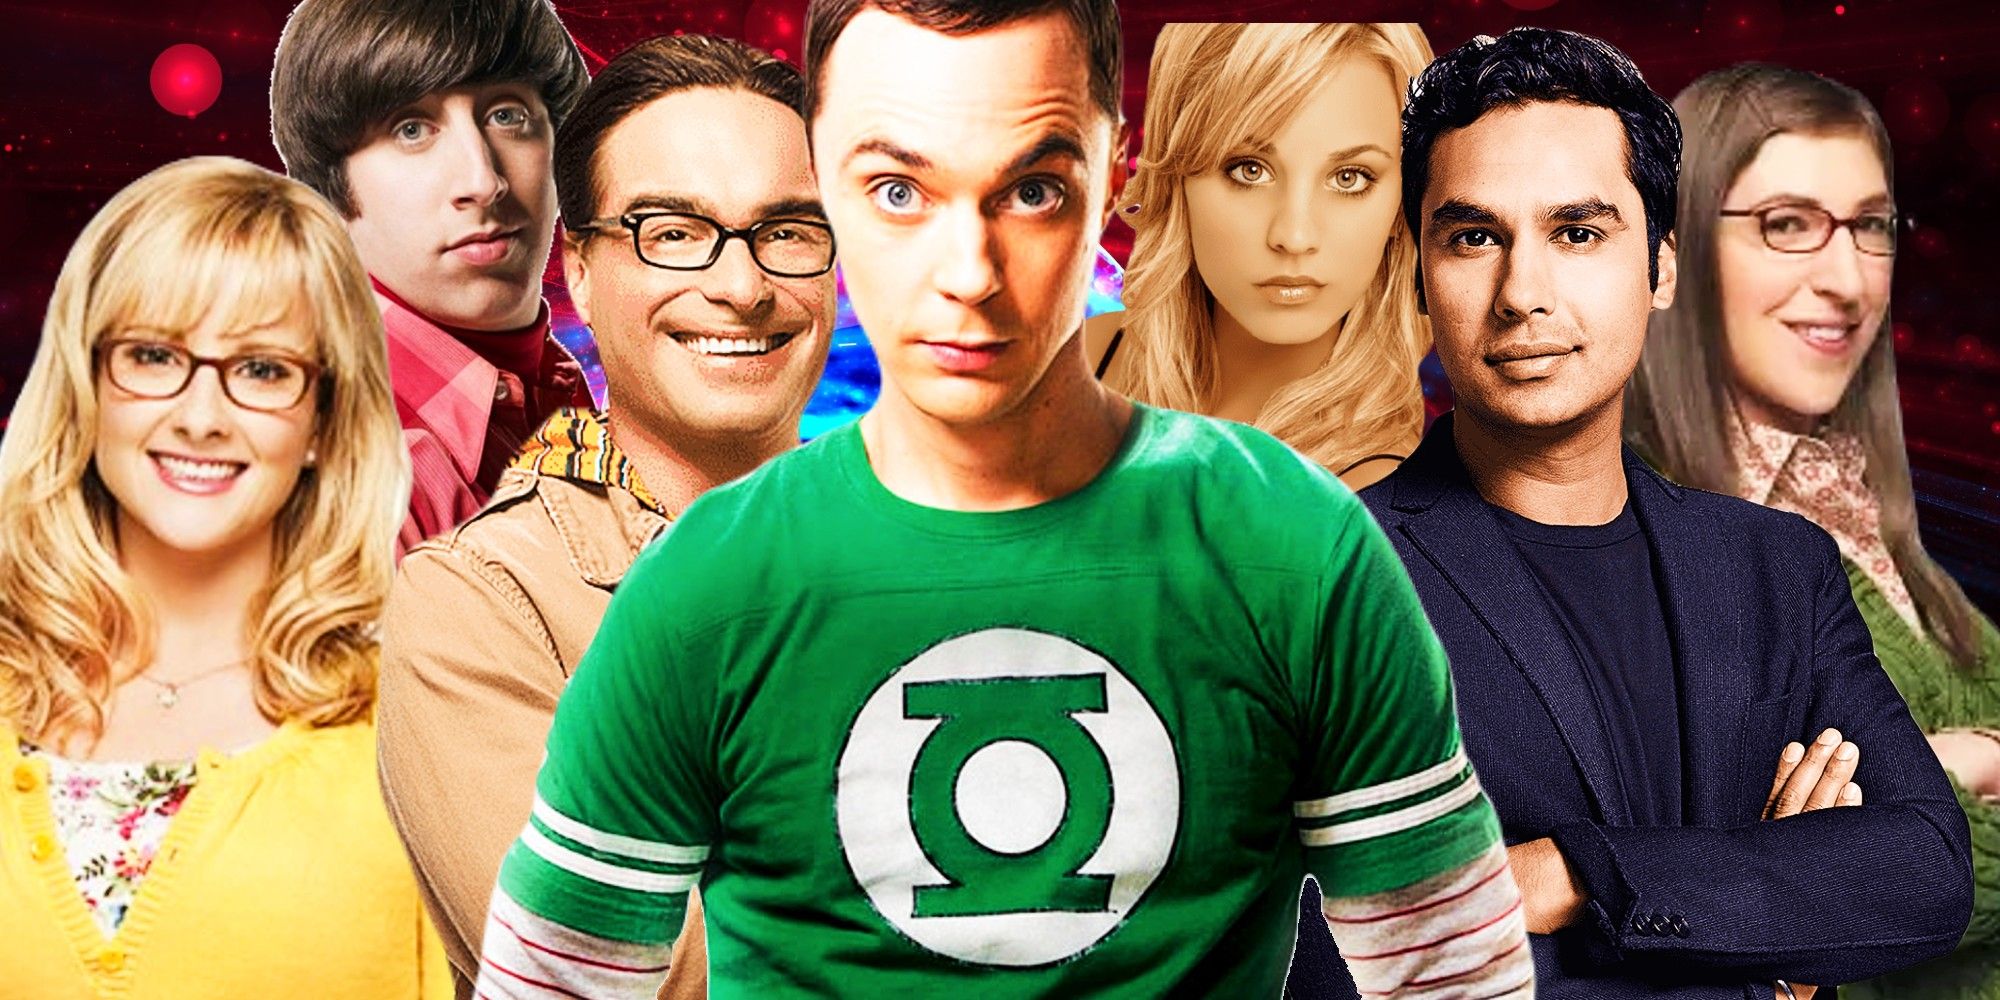 The-Big-Bang-Theory-main-characters